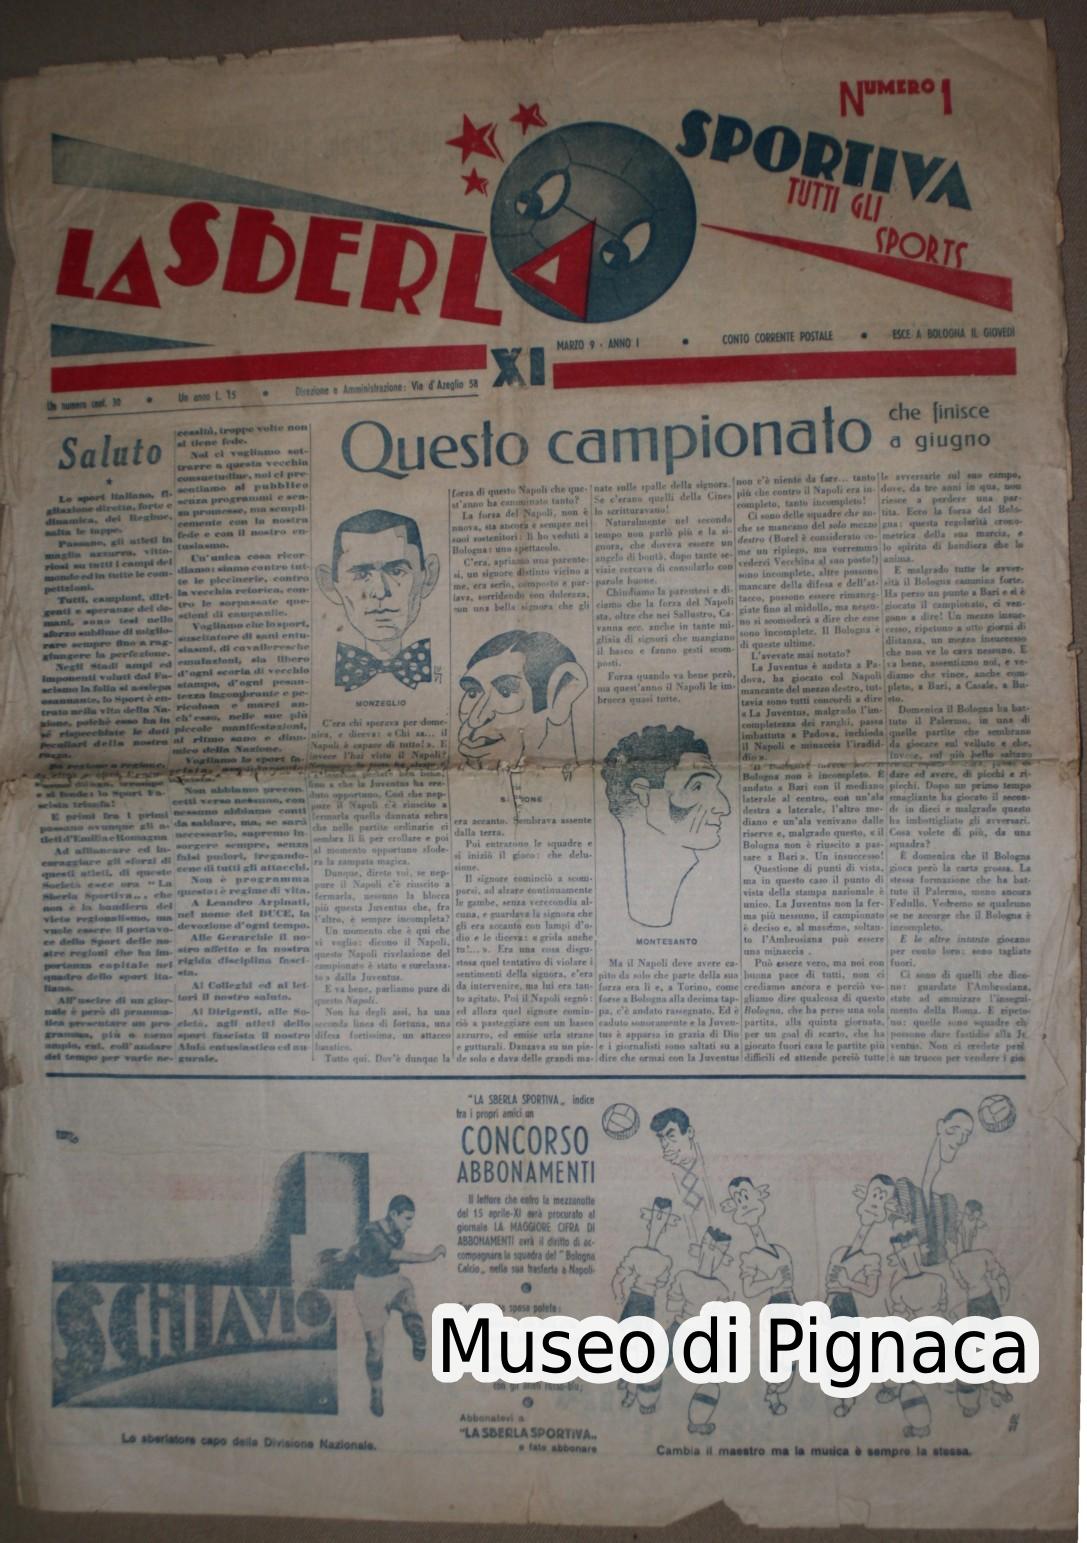 1933 Giornale LA SBERLA SPORTIVA - dedicata al Bologna